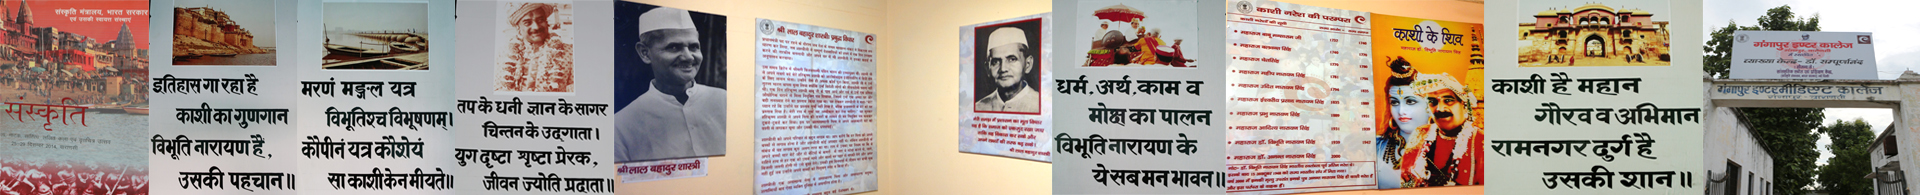 Project-Interpretation Centres at Varanasi banner image